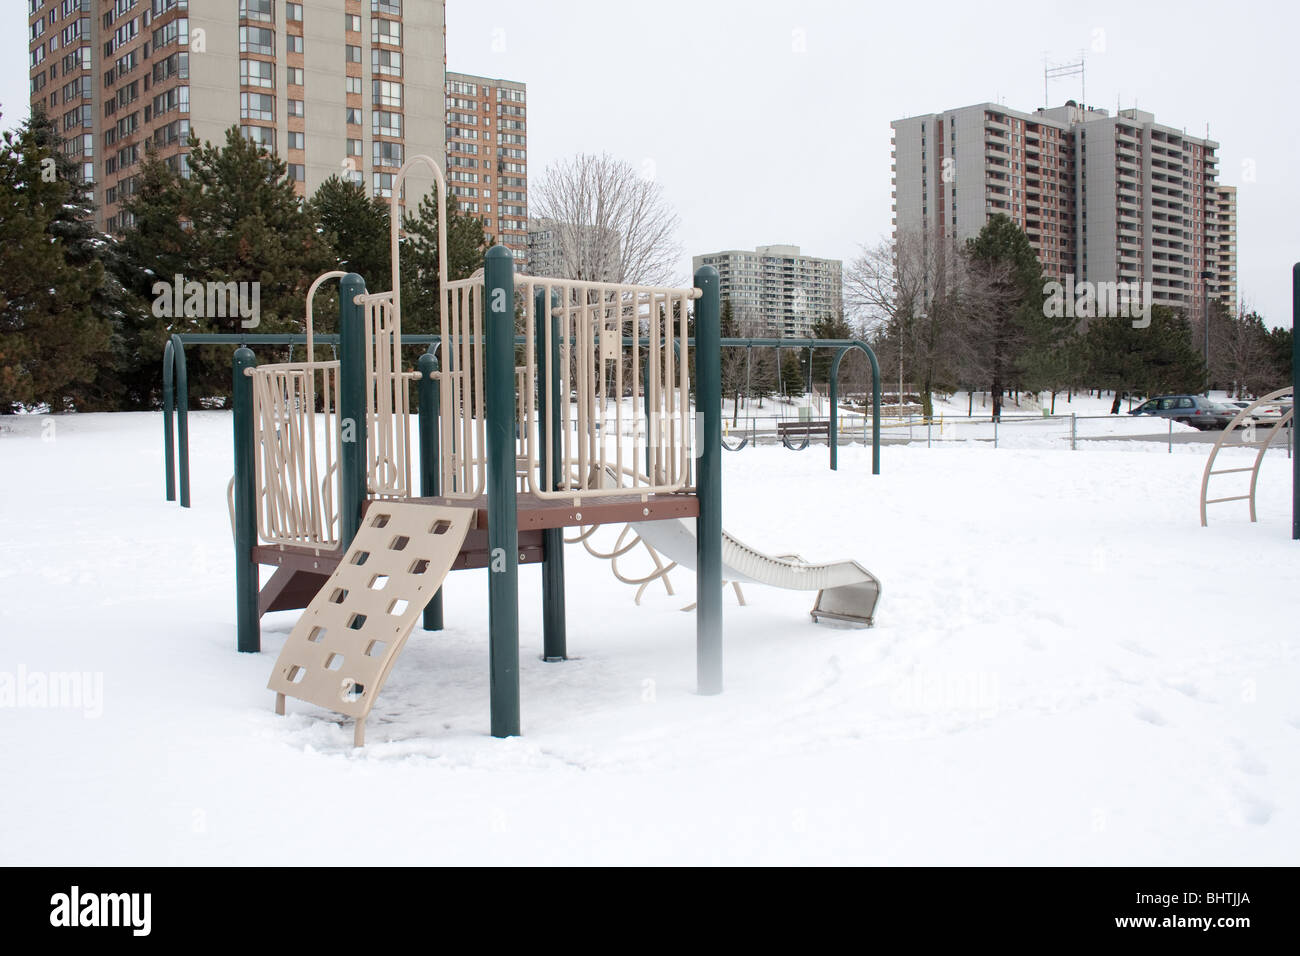 Aire de jeux enfants vide hiver neige apartments Banque D'Images